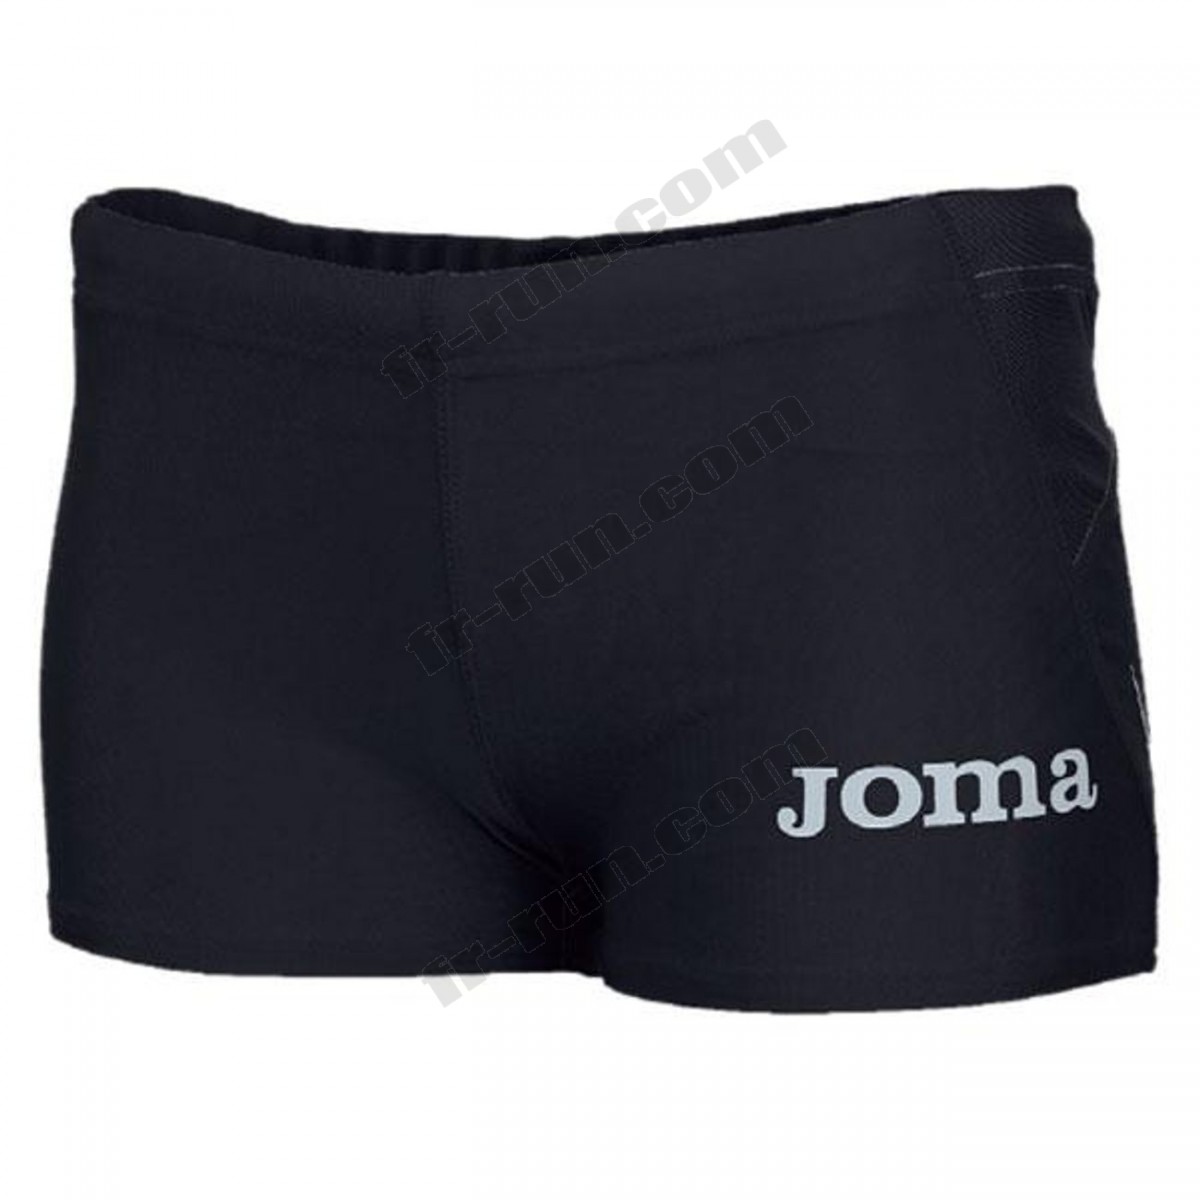 Joma/running femme JOMA Joma Elite Ii Shorts ◇◇◇ Pas Cher Du Tout - -0